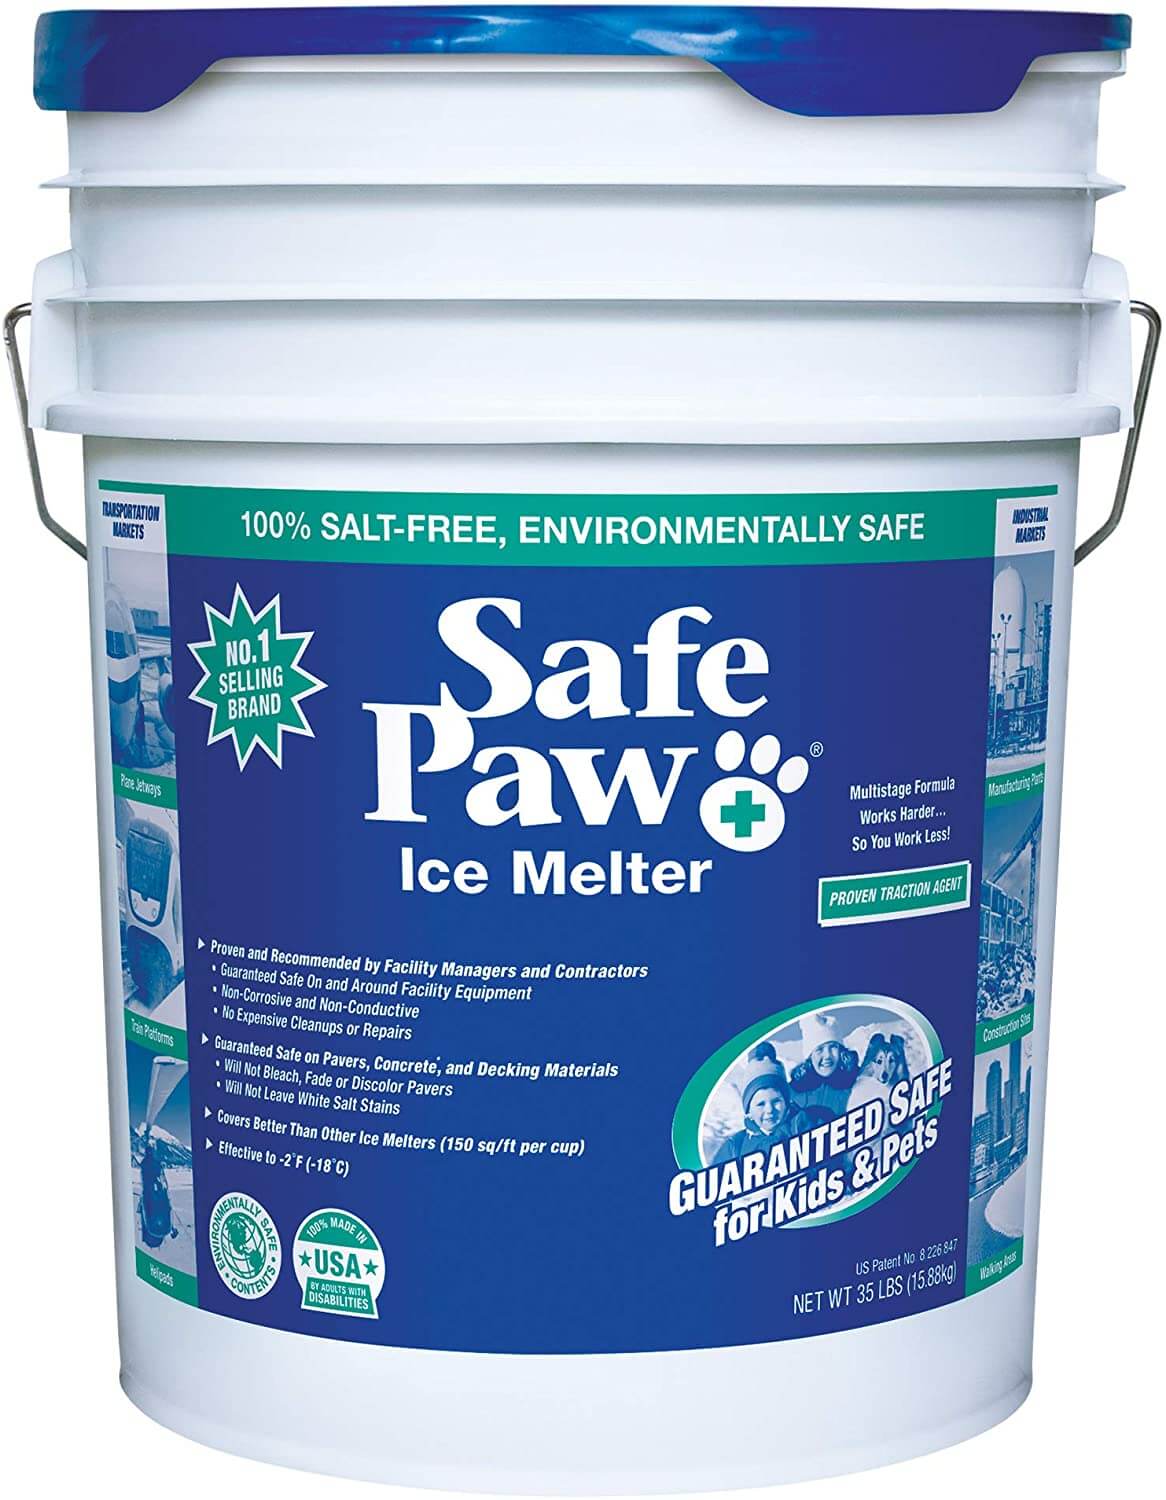 Safe Paw Ice Melt front